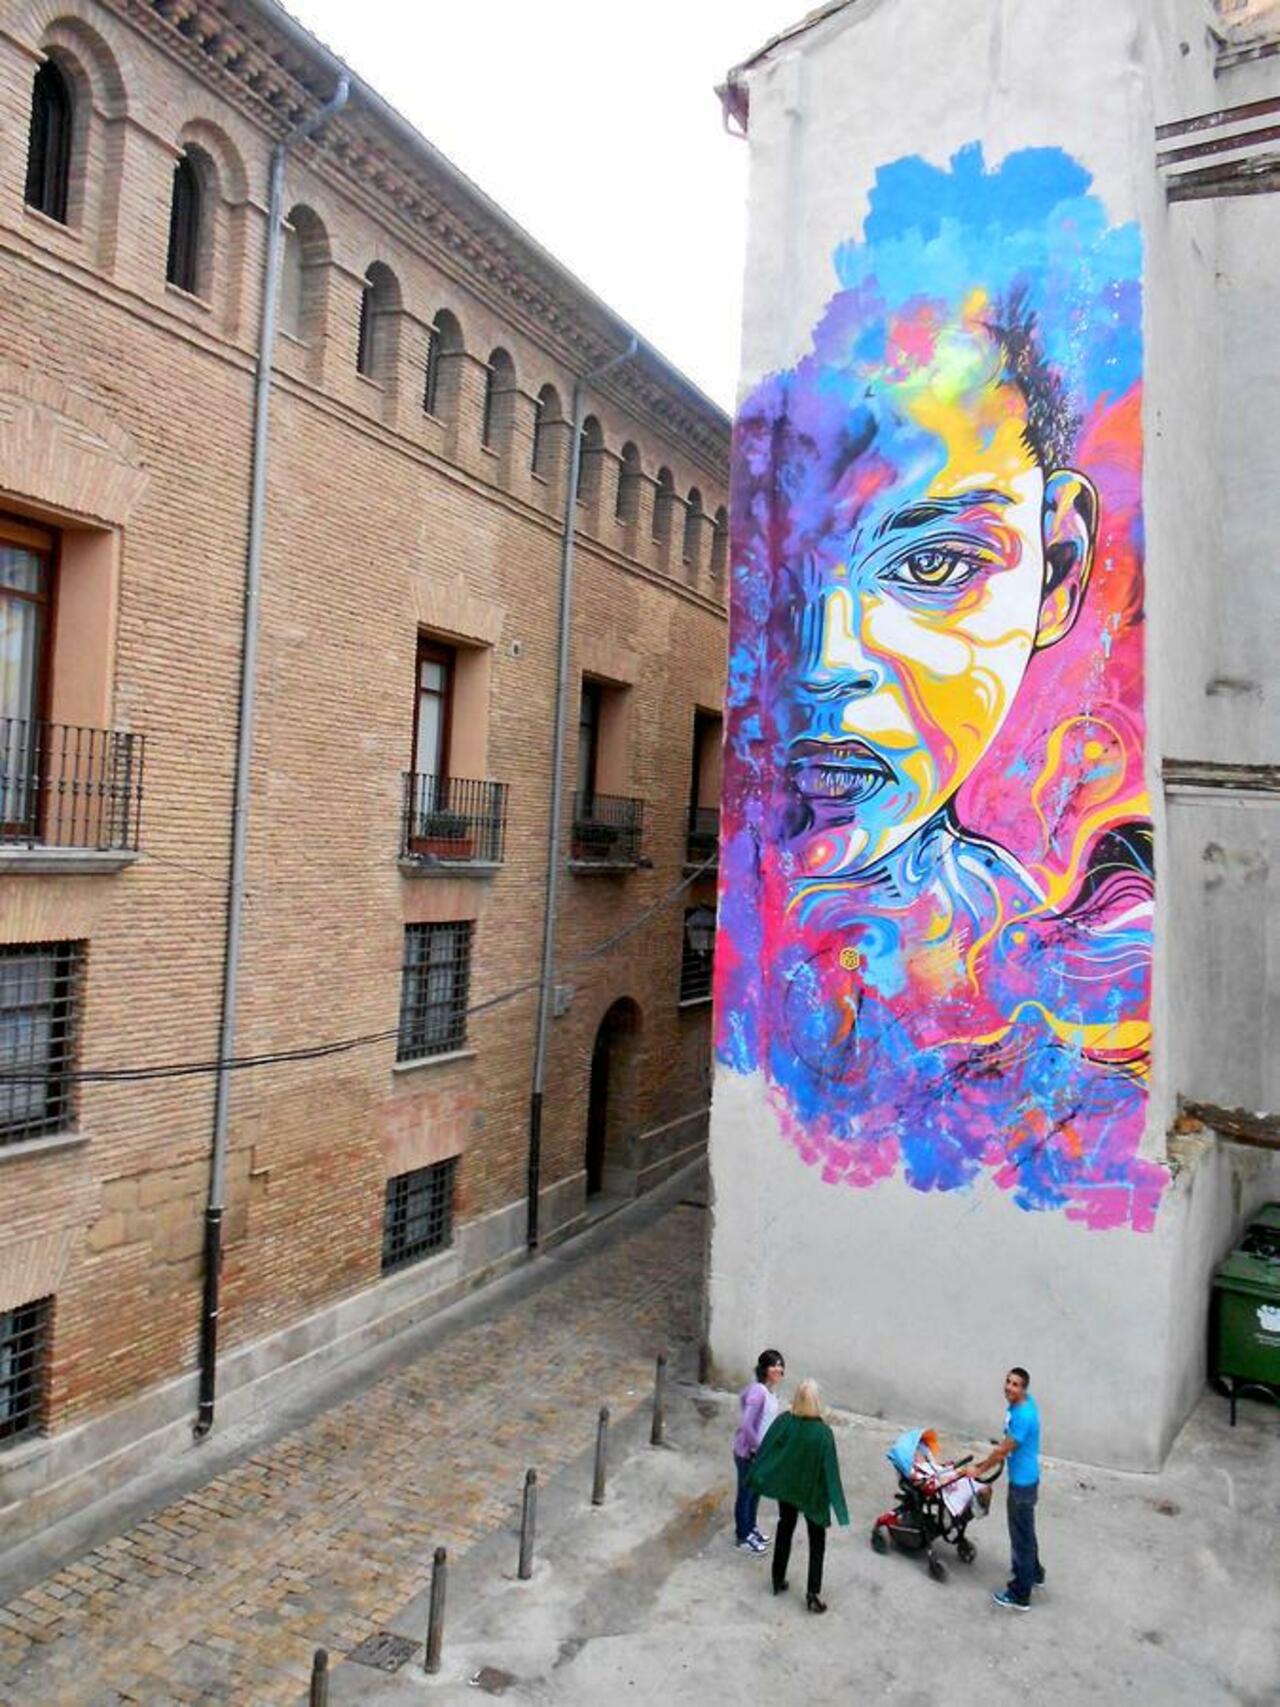 C215
Barcelona
#streetart #art #graffiti #mural http://t.co/c4YcuFgFY0